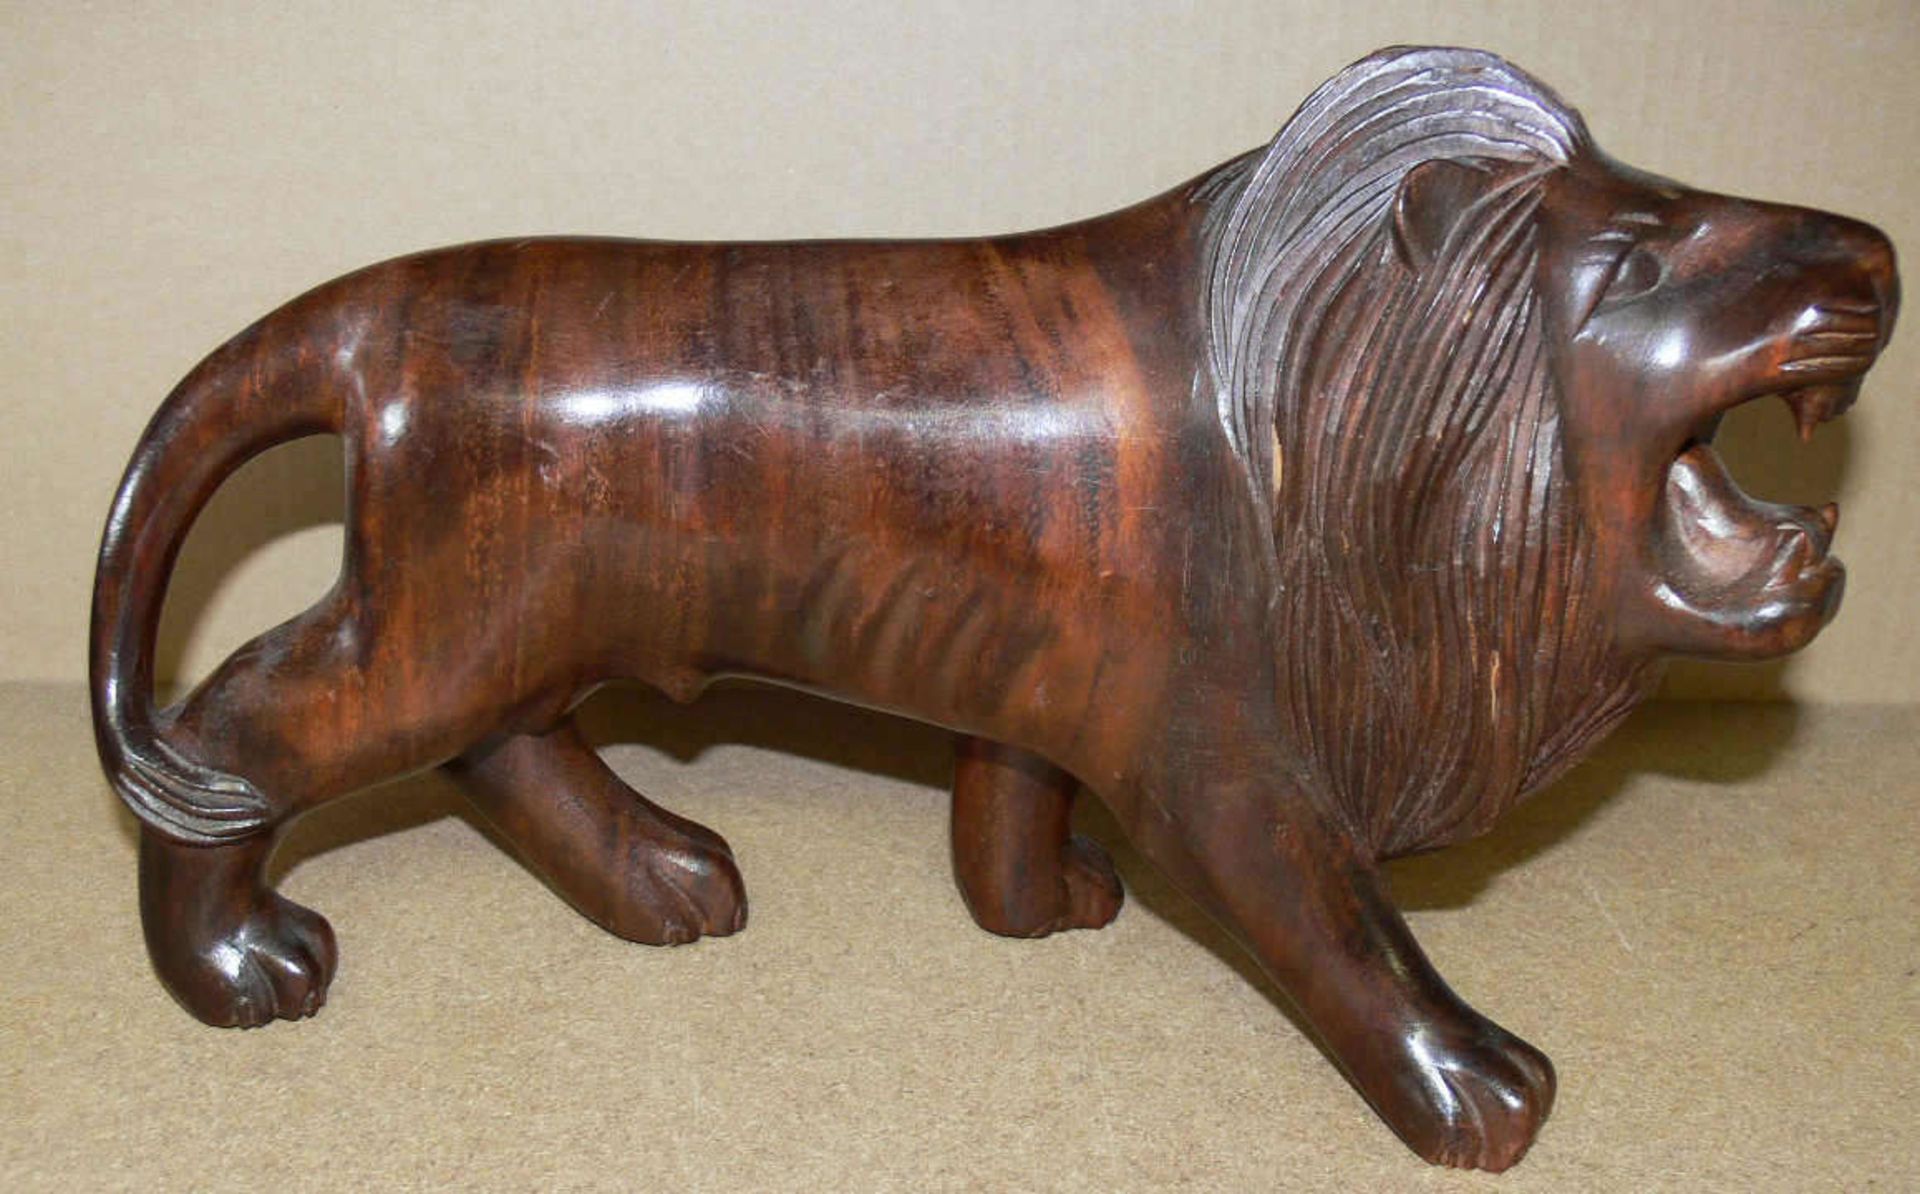 Holz - Skulptur "Löwe". L: ca. 35 cm. H: ca. 23 cm. Mit kleinen Bereibungen.